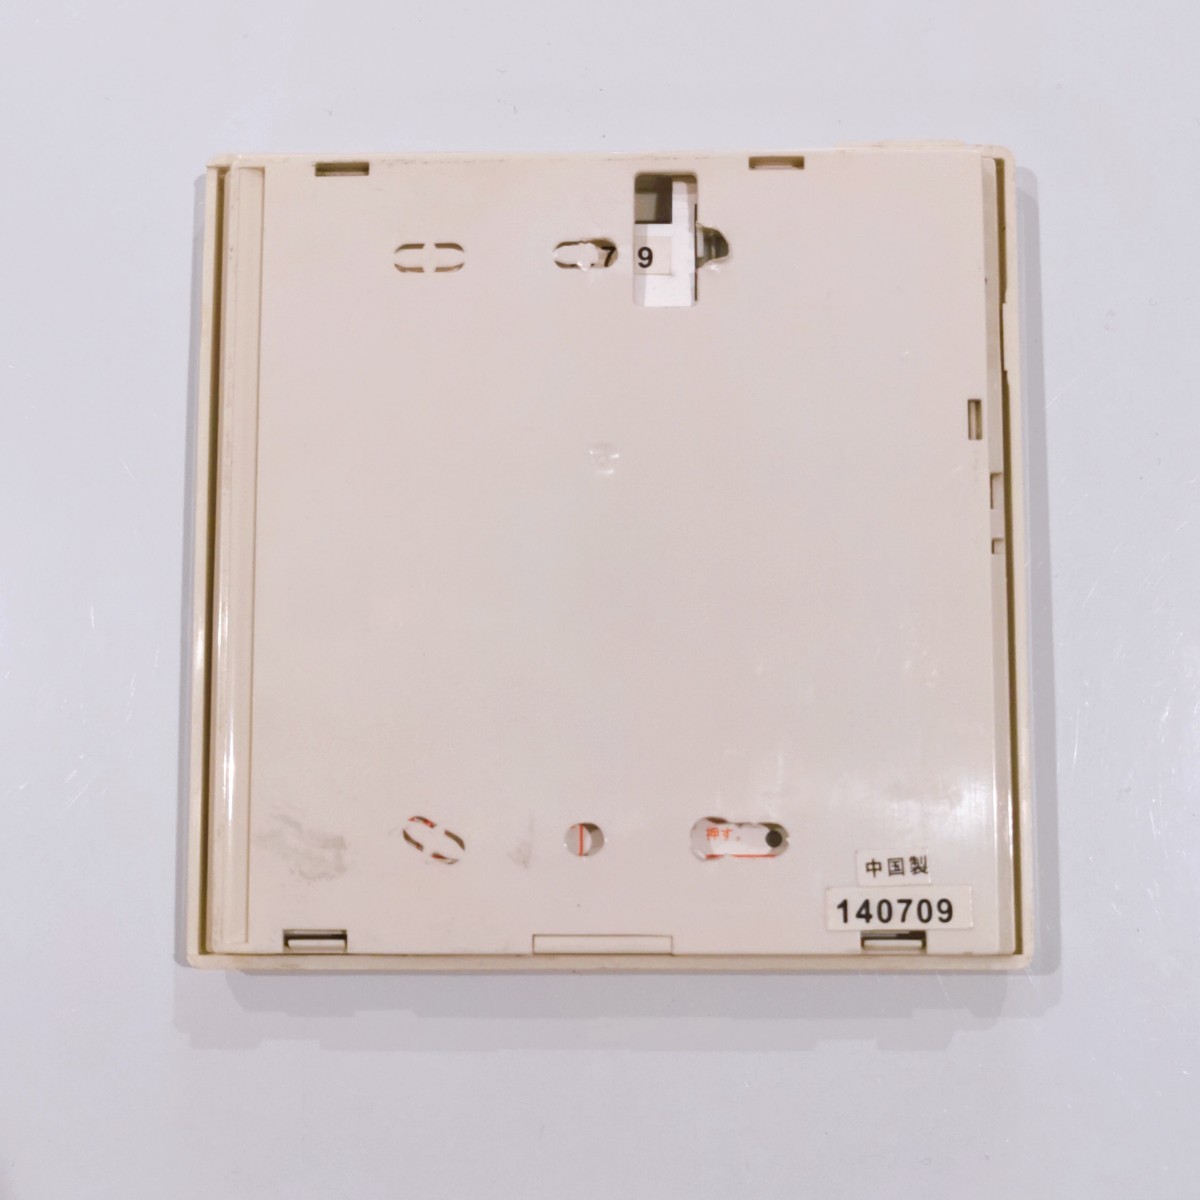 476 東芝 トウシバ RBC-AMT21 (SX-A1J①) 業務 エアコン リモコン-